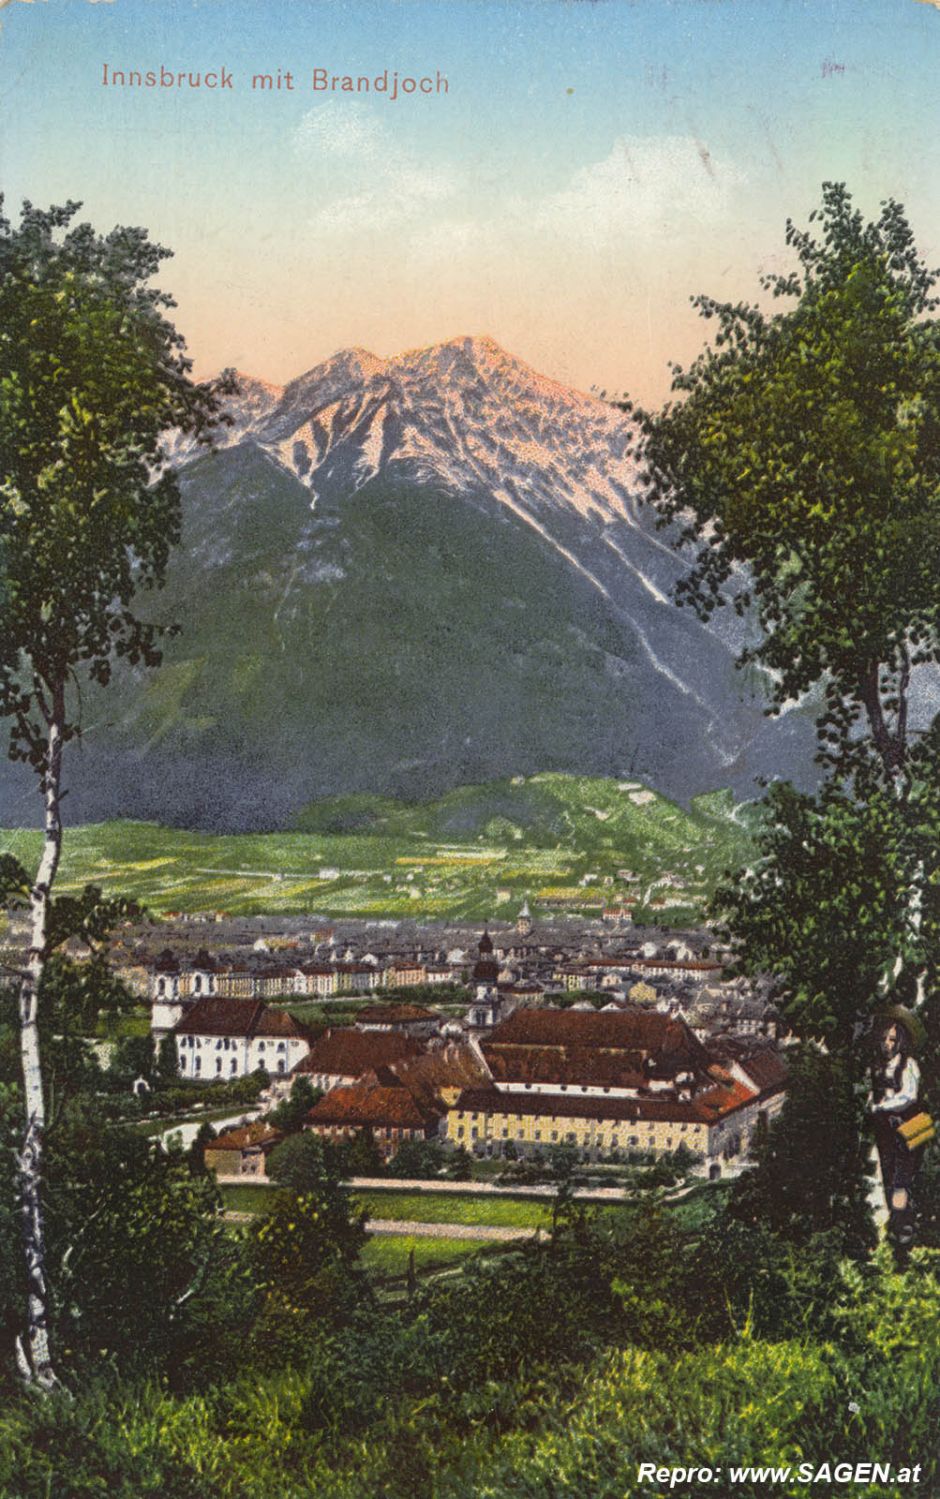 Innsbruck mit Brandjoch